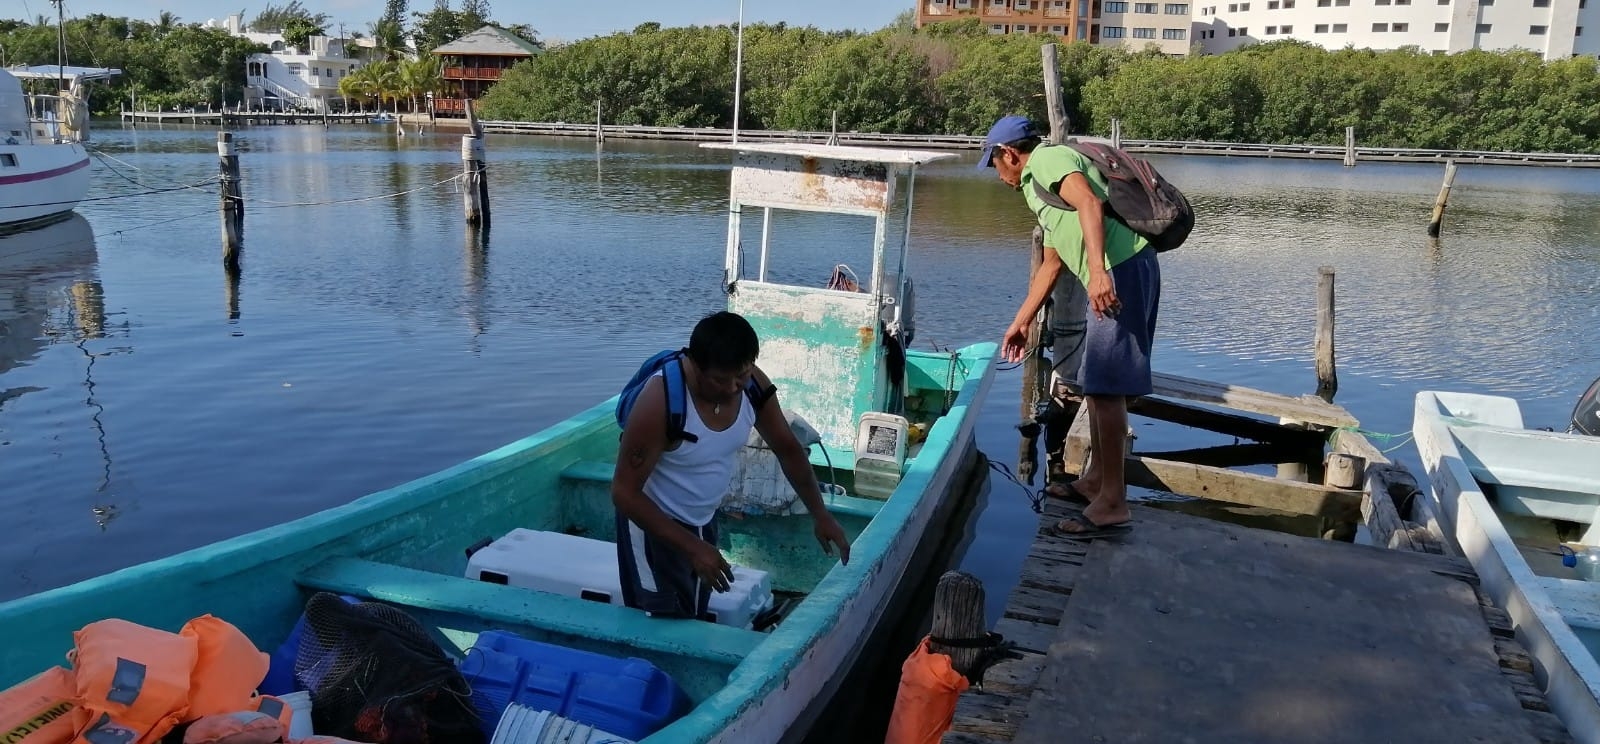 Pescadores de Isla Mujeres rechazan denunciar robo de equipos; desconfían de autoridades